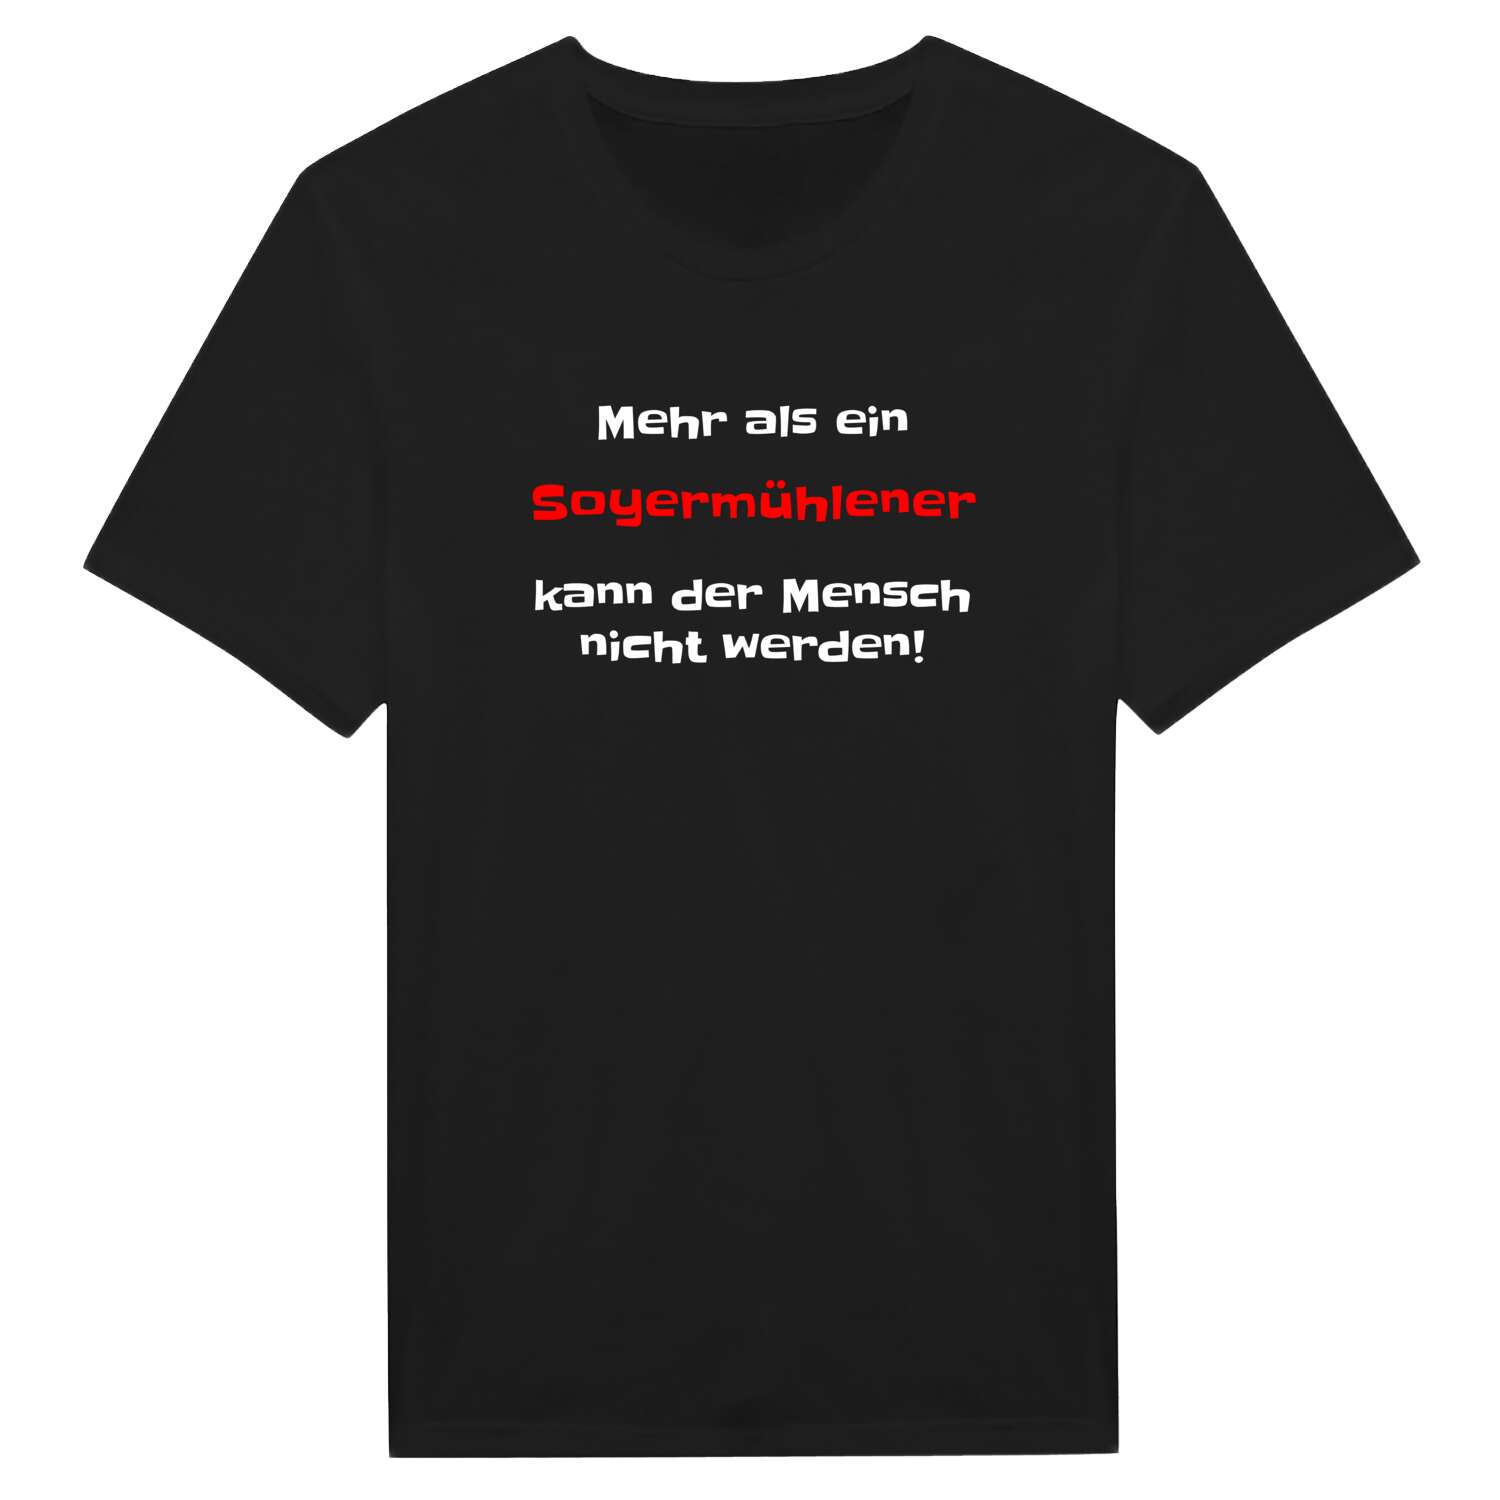 Soyermühle T-Shirt »Mehr als ein«